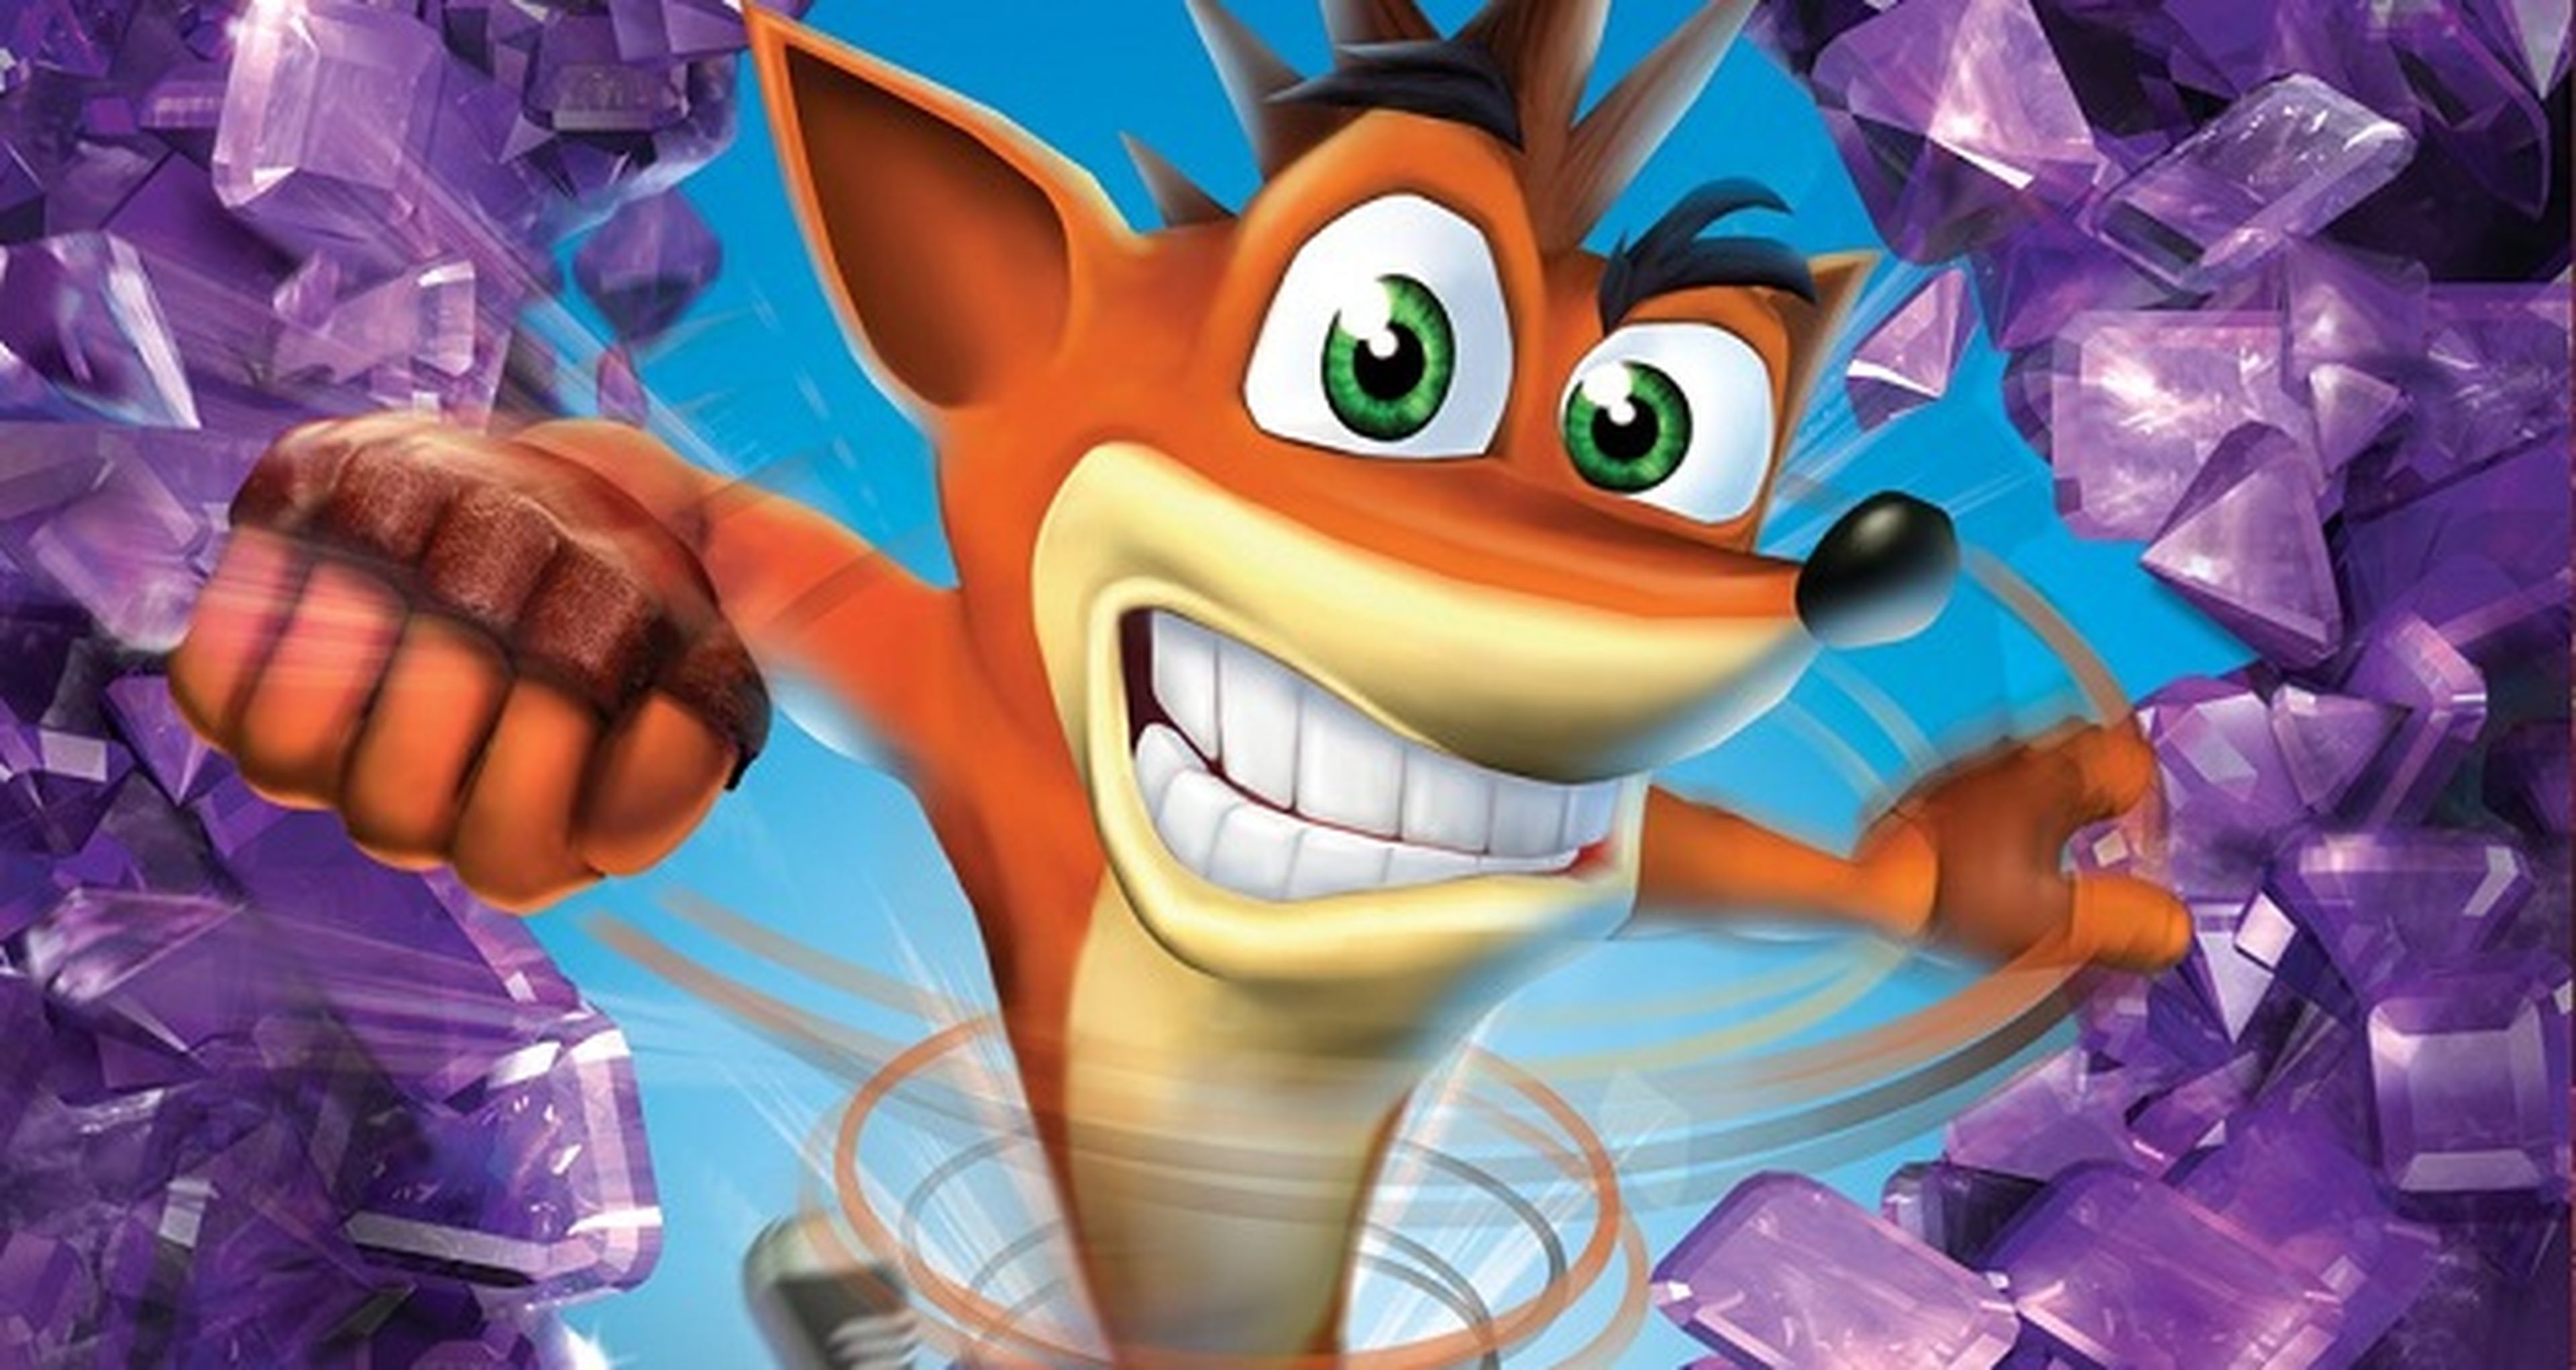 Crash Bandicoot - Sony confirma que sus derechos pertenecen a Activision